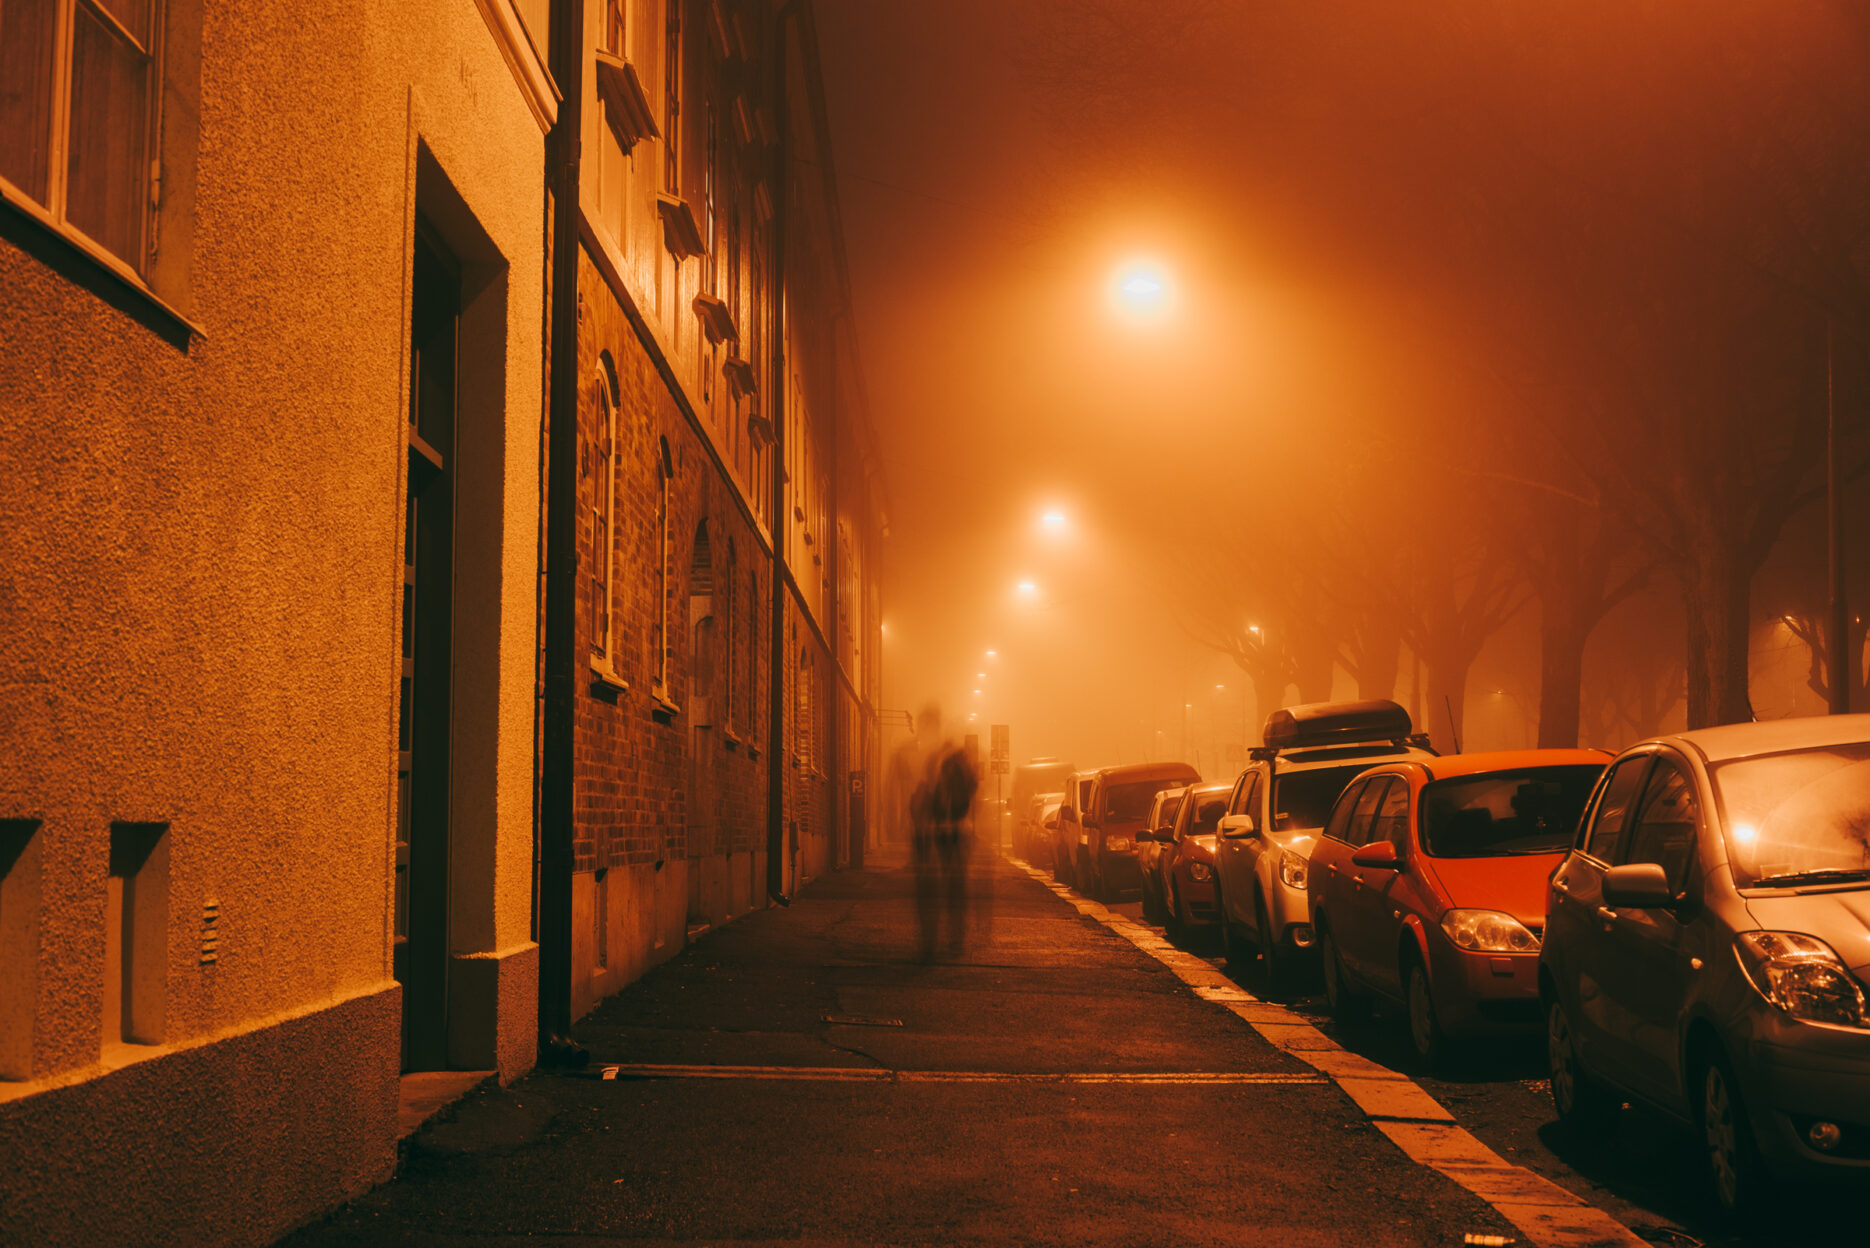 Person walking on a dark foggy street